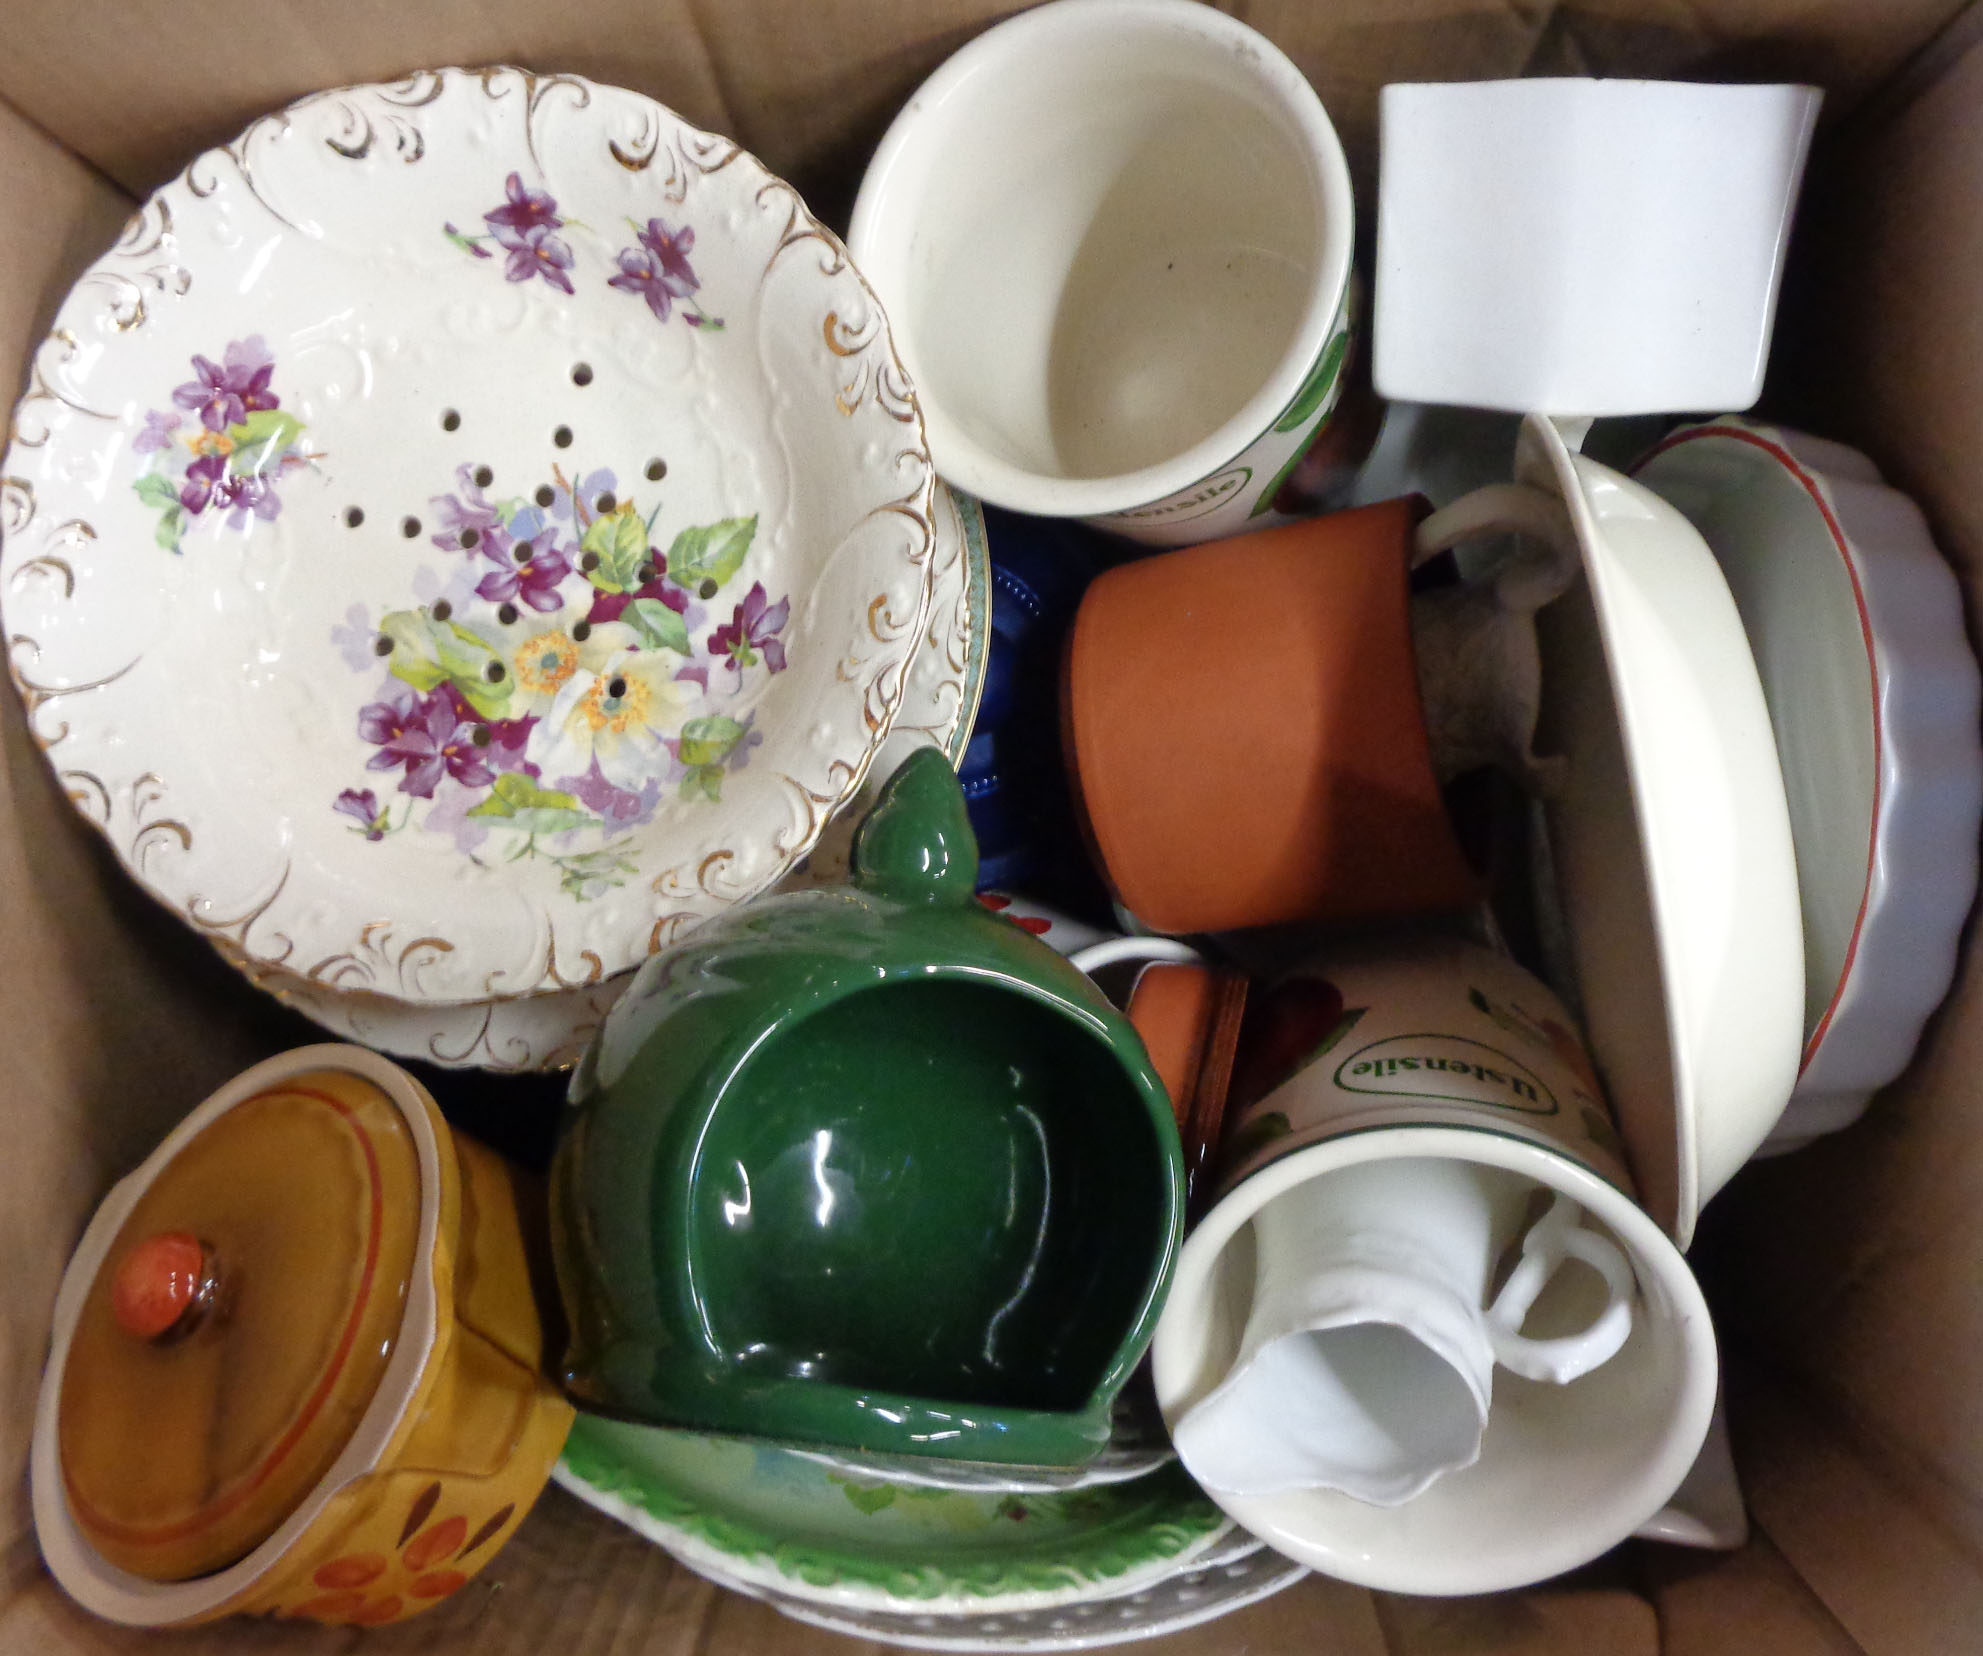 A box containing assorted china including plates, comport, ramekins, etc.